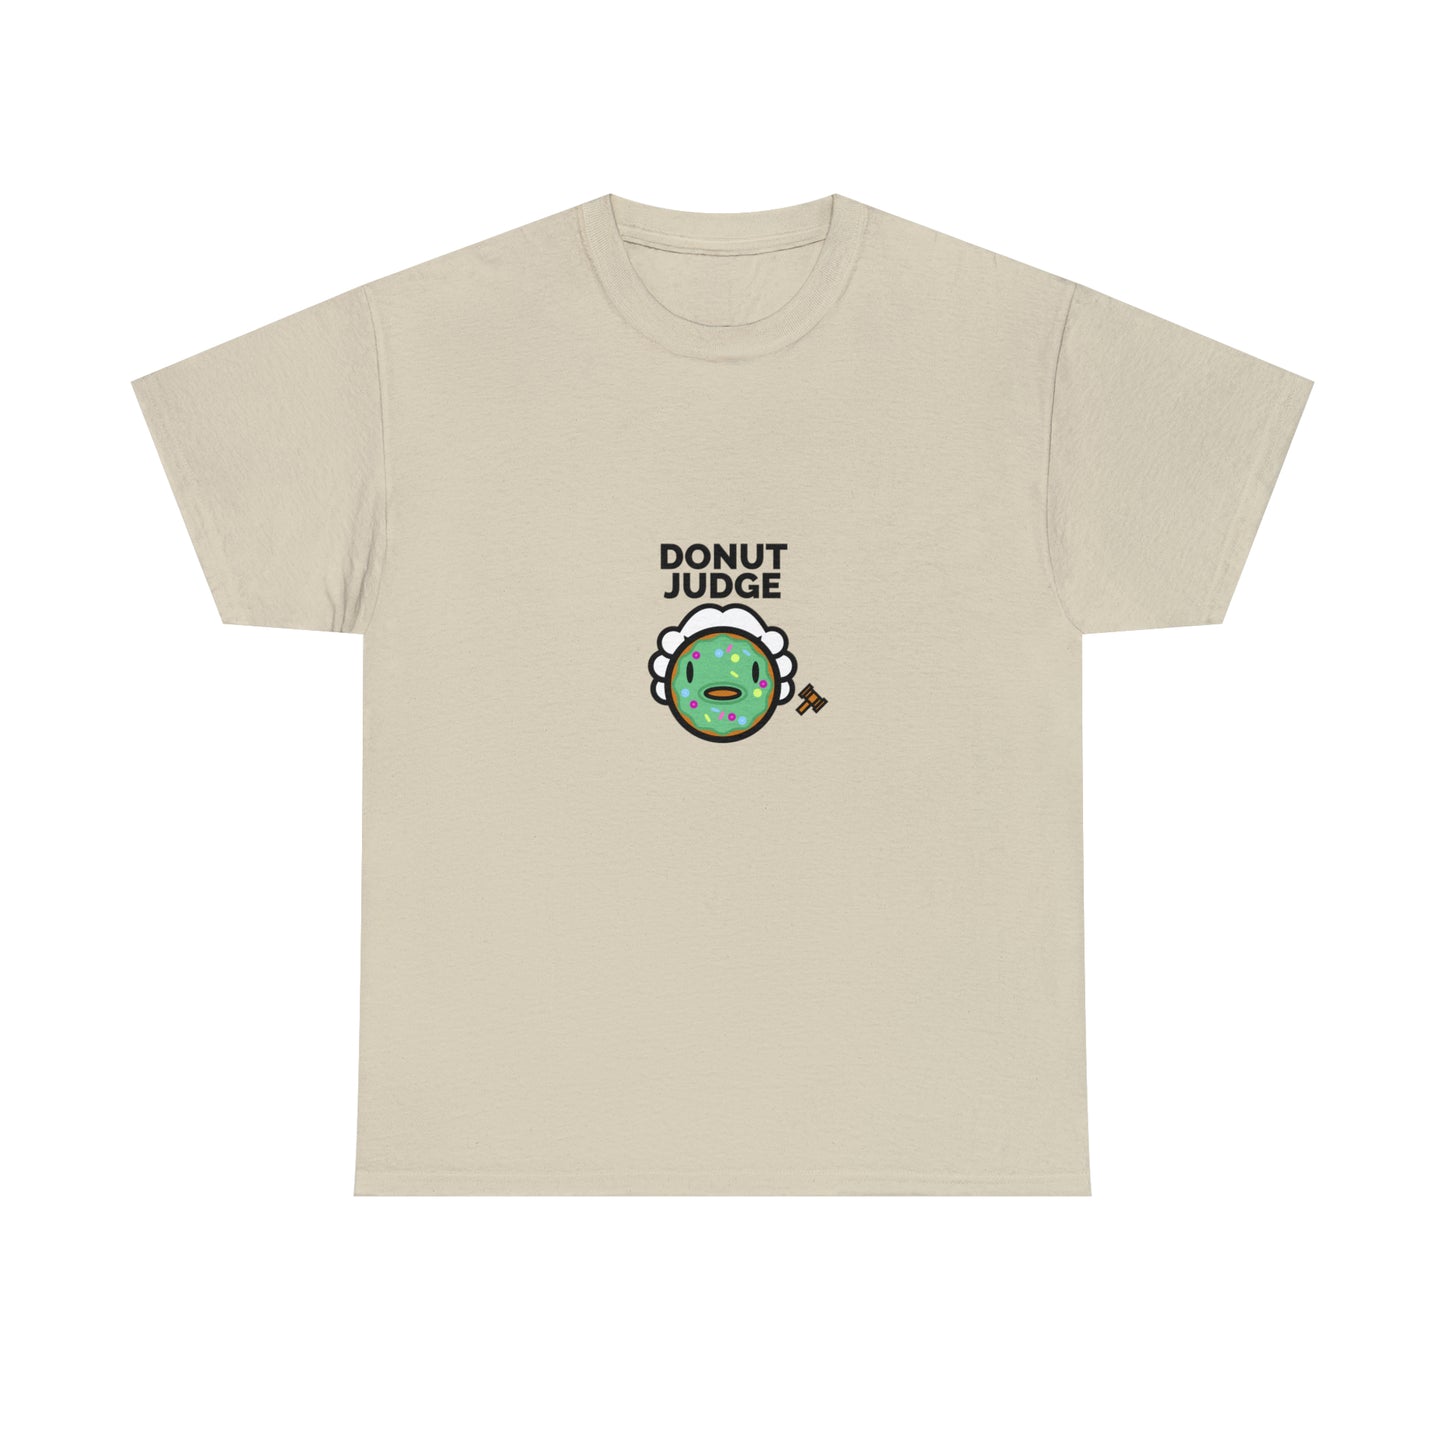 Custom Parody T-shirt, DONUT judge design